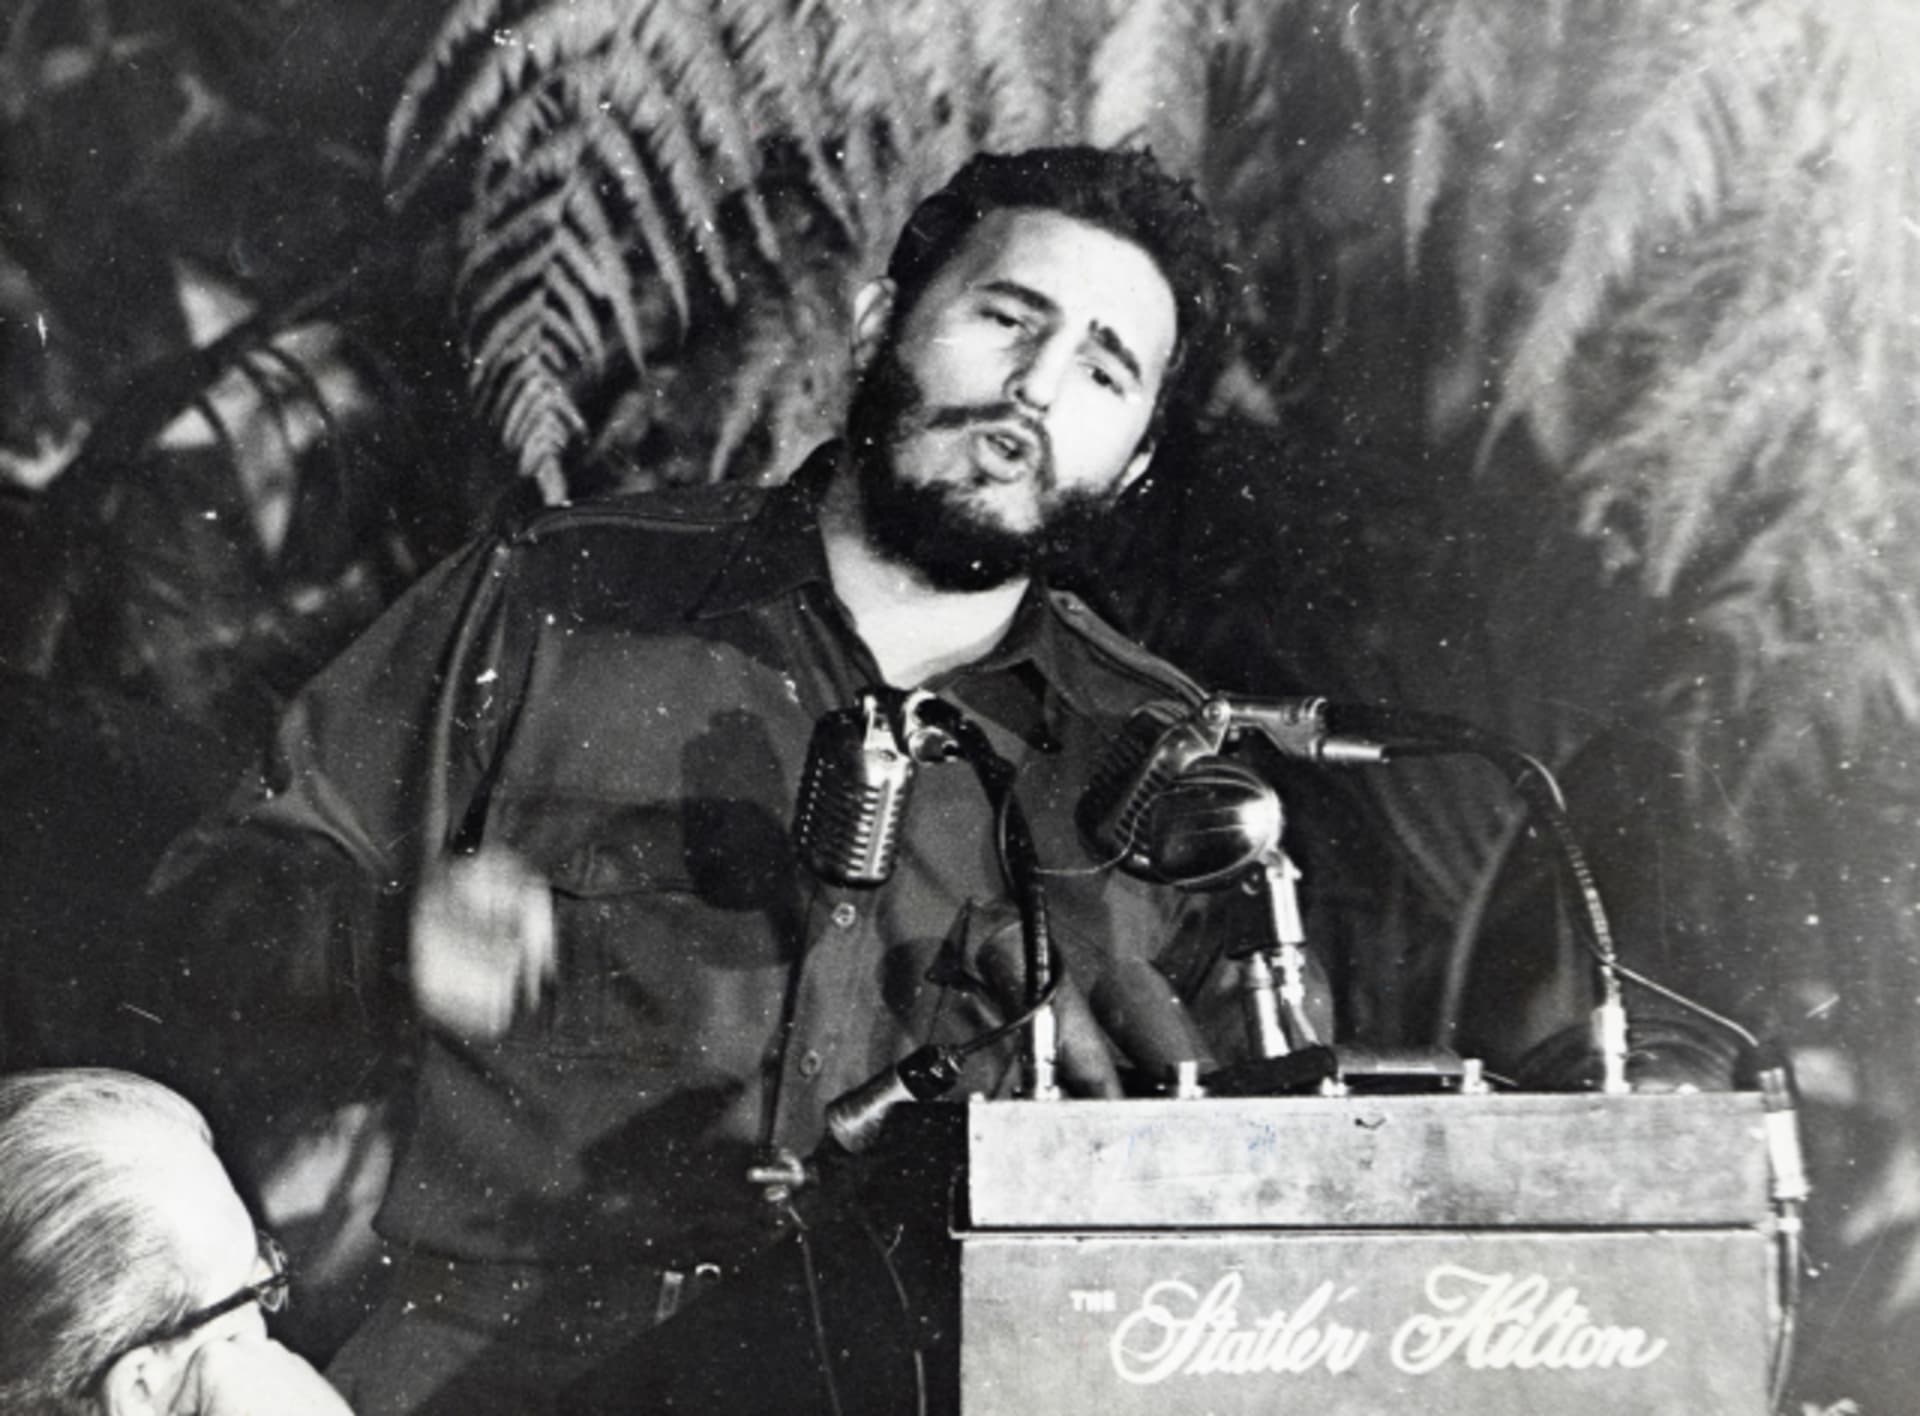 Fidel Castro při jednom ze svých plamenných projevů v roce 1959 v Havaně.